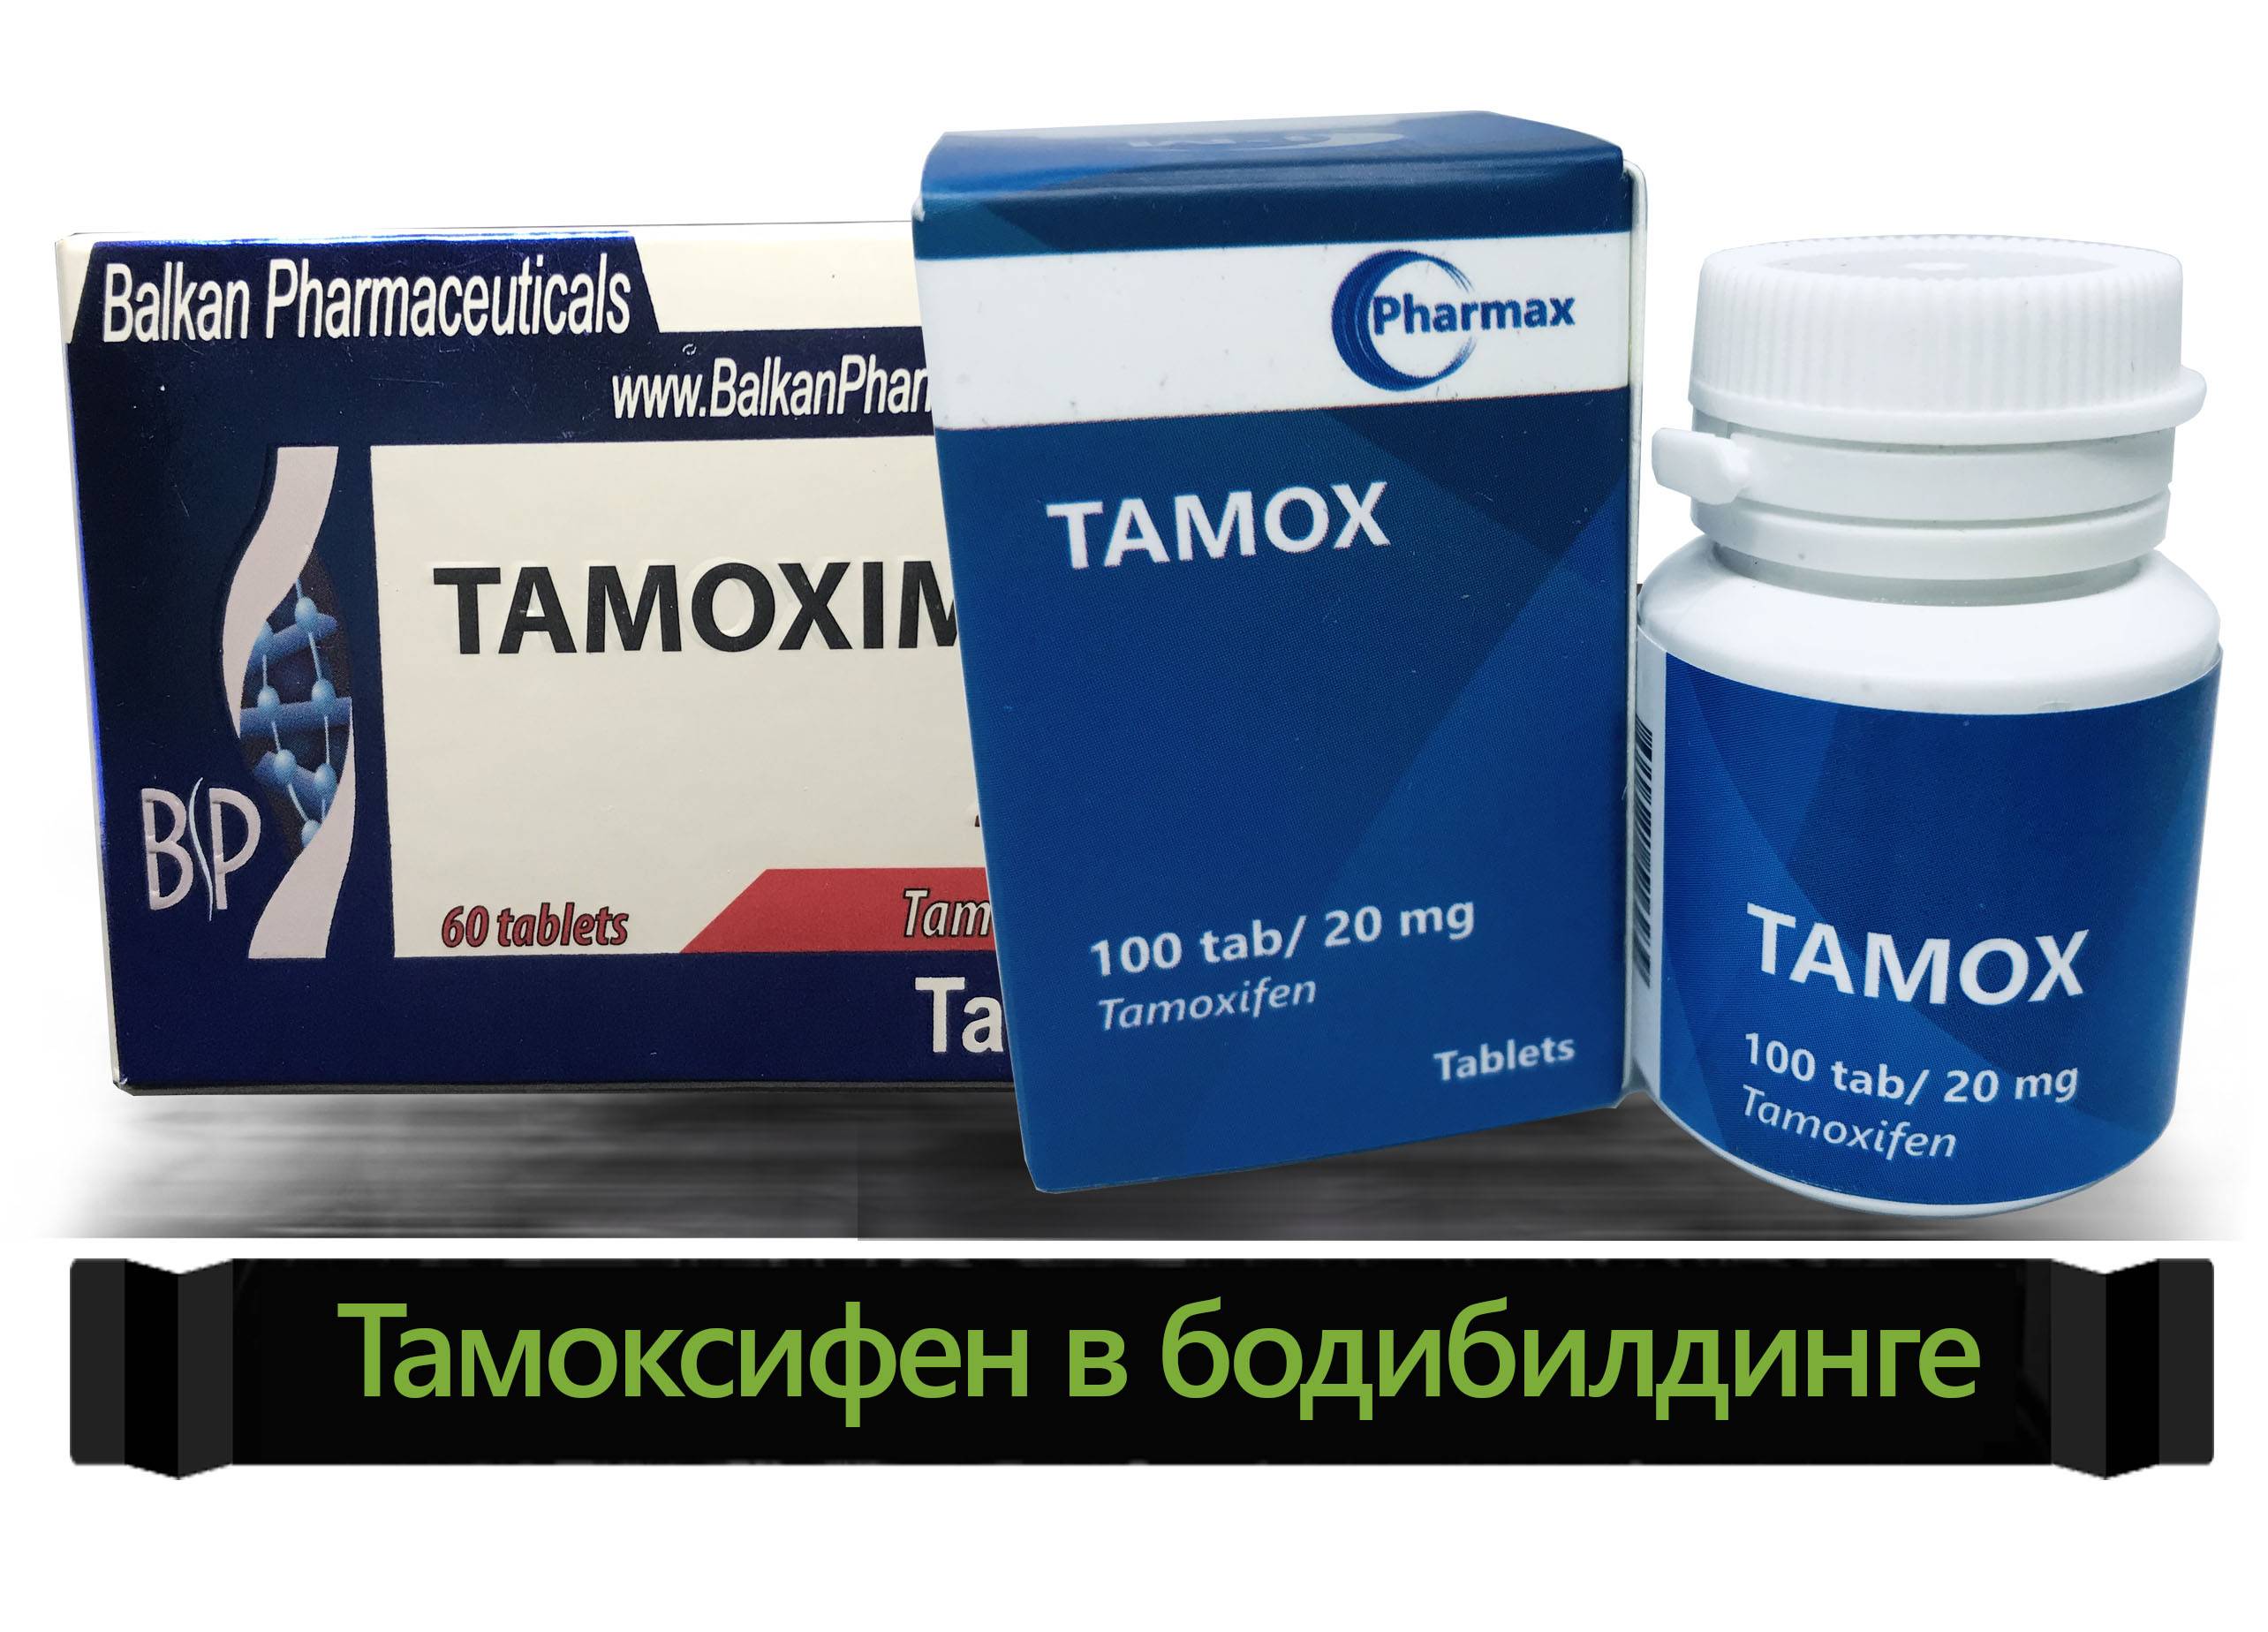 Летрозол незначительно лучше тамоксифена в адъювантной терапии гормонозависимого рмж у пациенток в постменопаузе. долгосрочные результаты исследования big 1-98